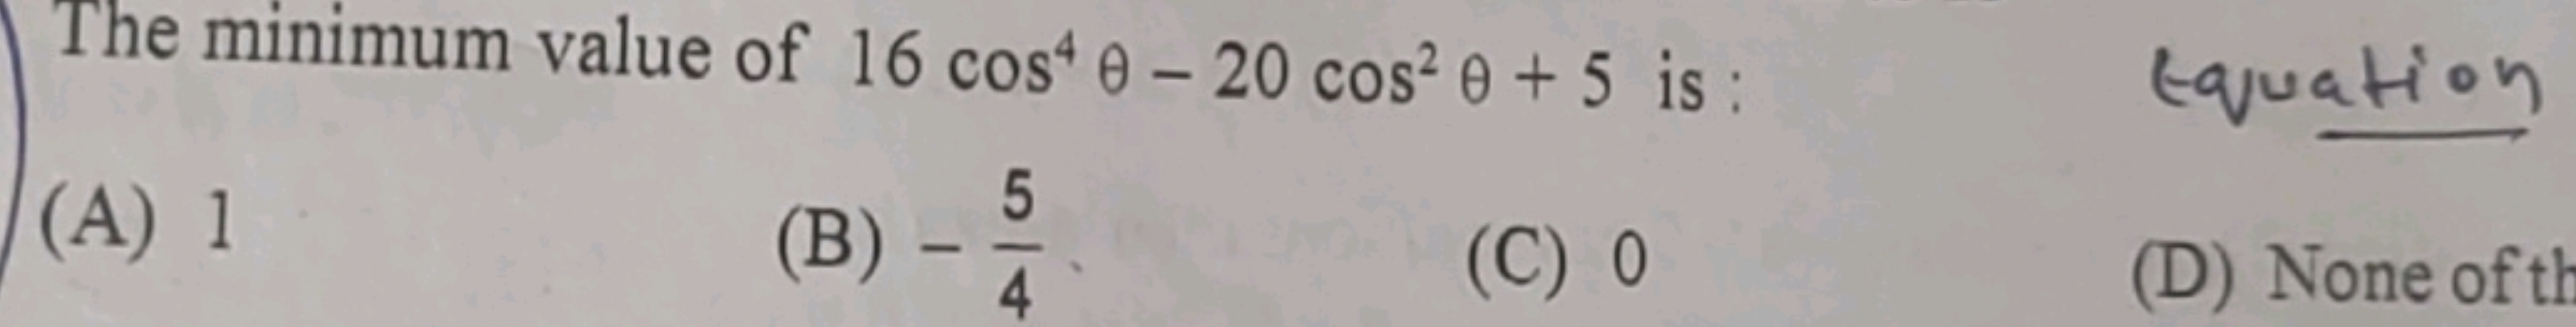 The minimum value of 16cos4θ−20cos2θ+5 is : Equation